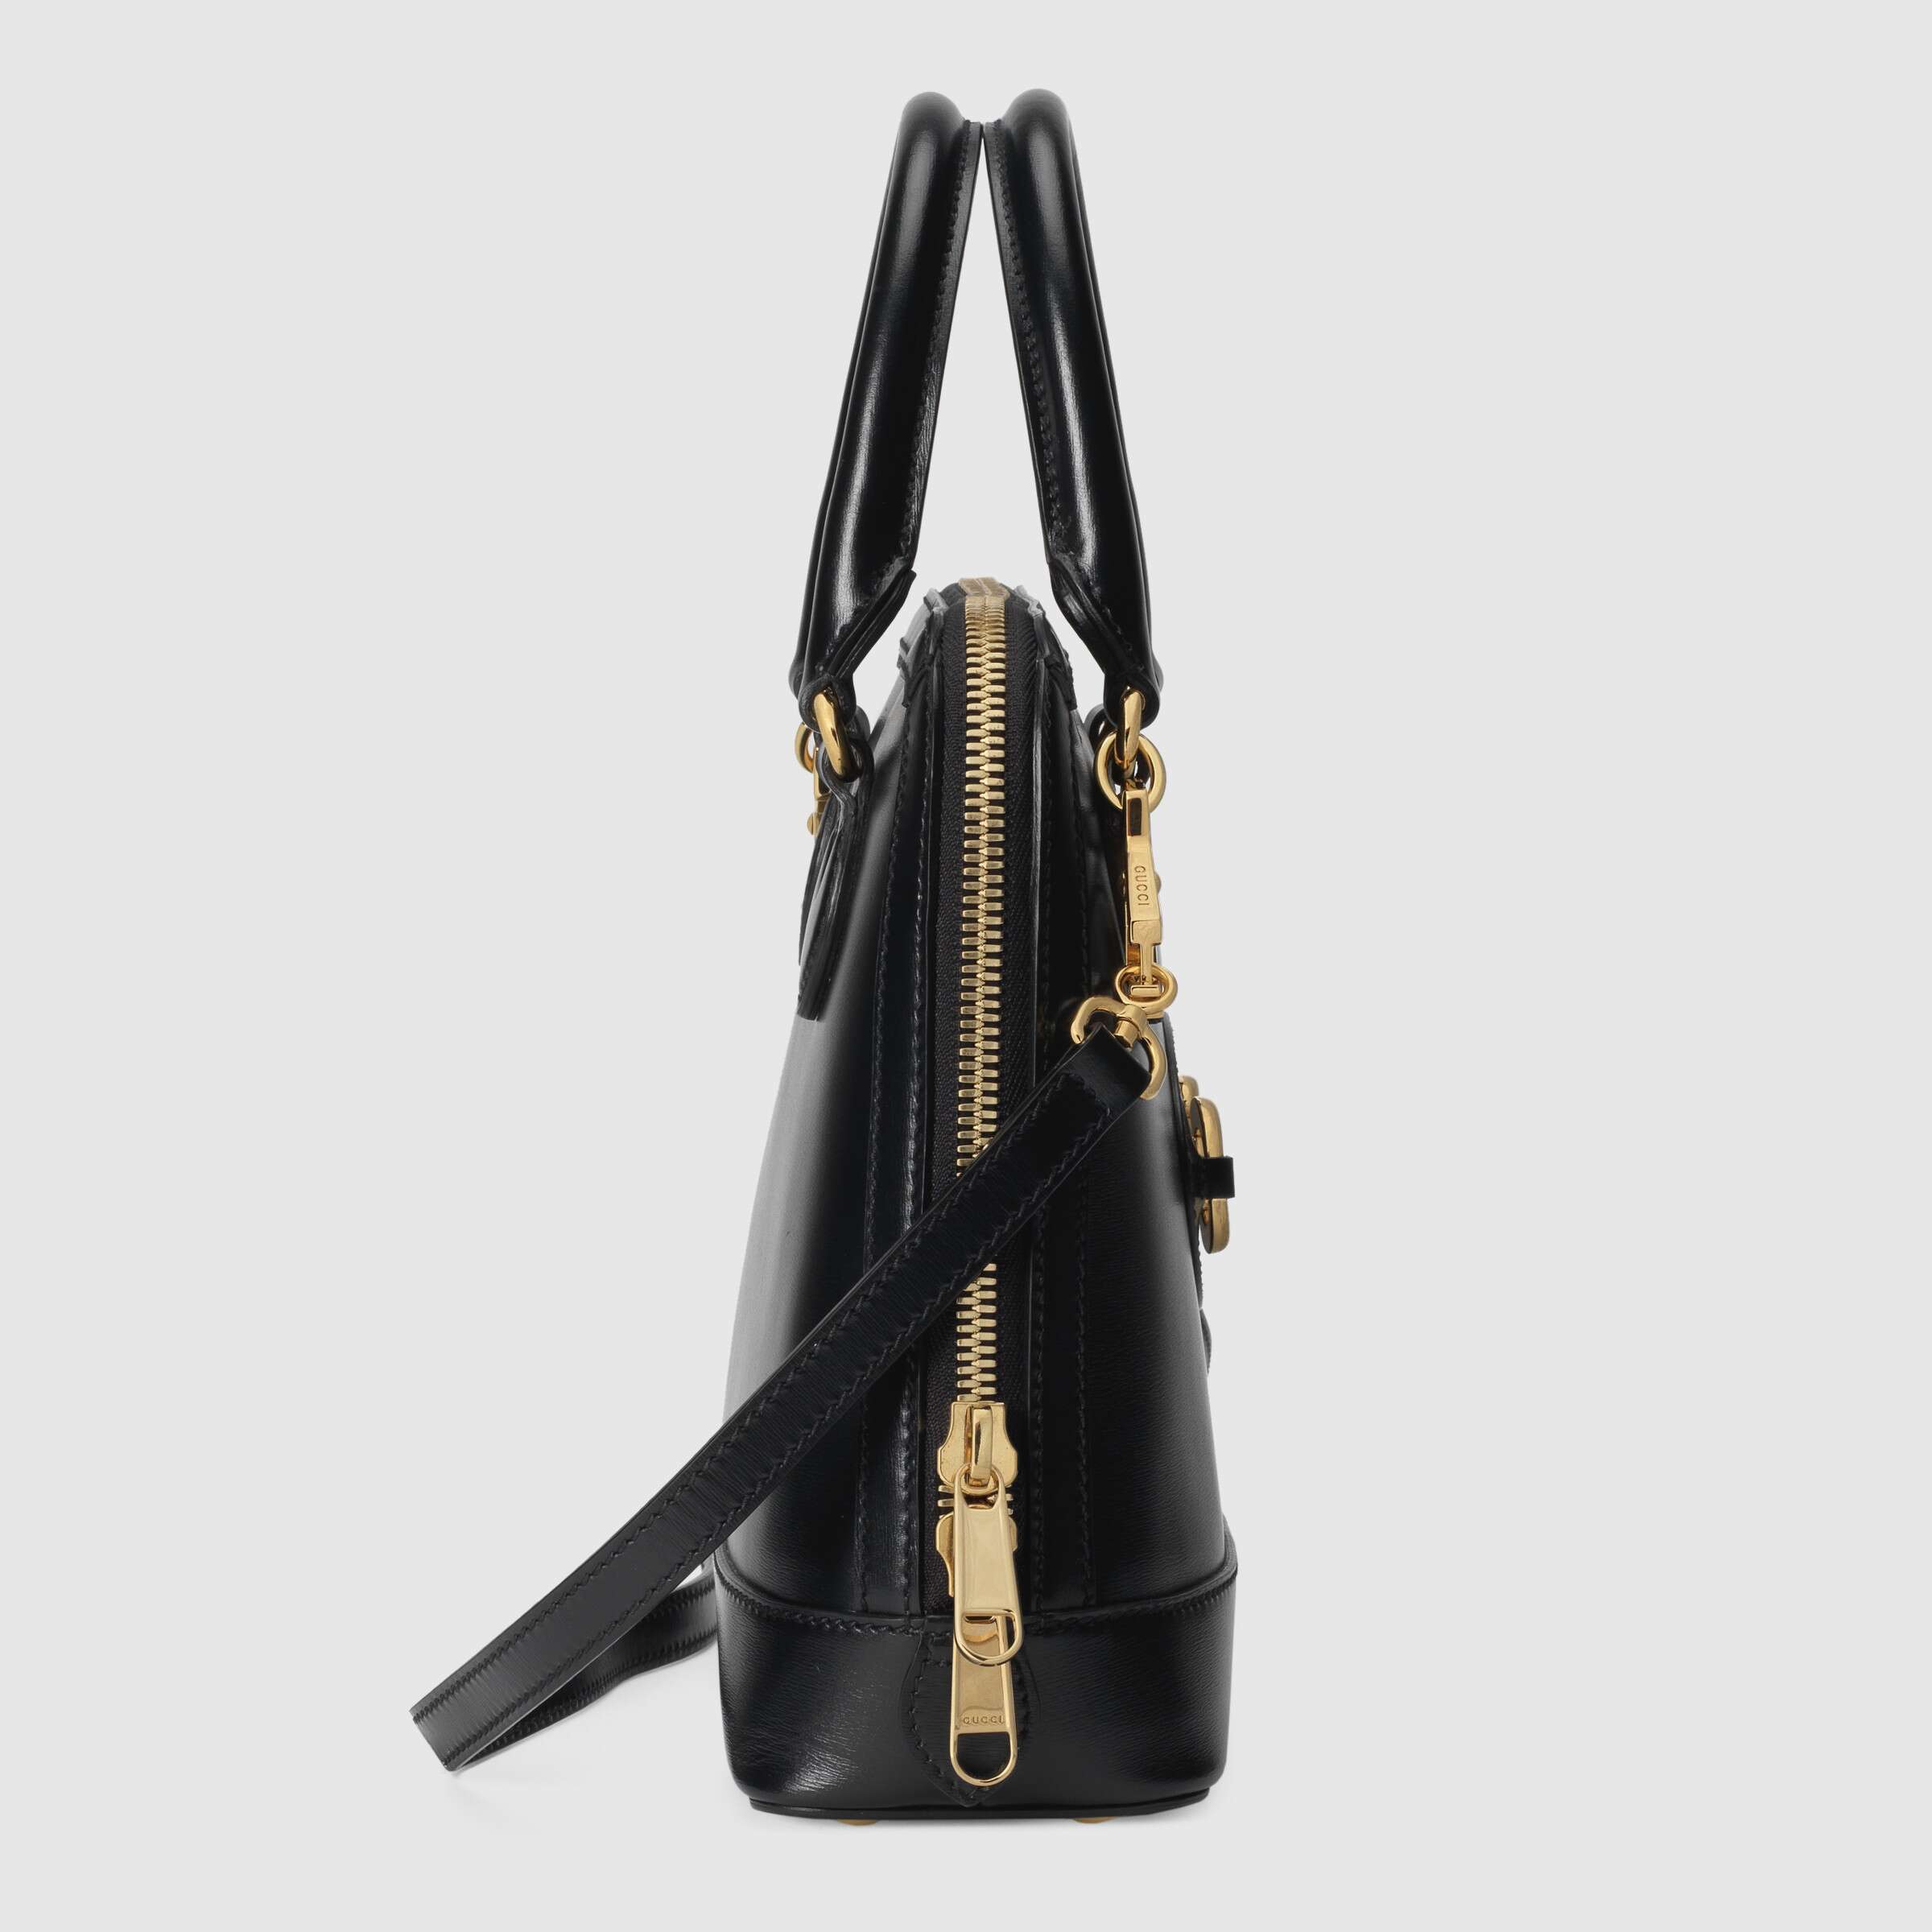 Gucci 1955 Horsebit Small Top Handle Bag Black